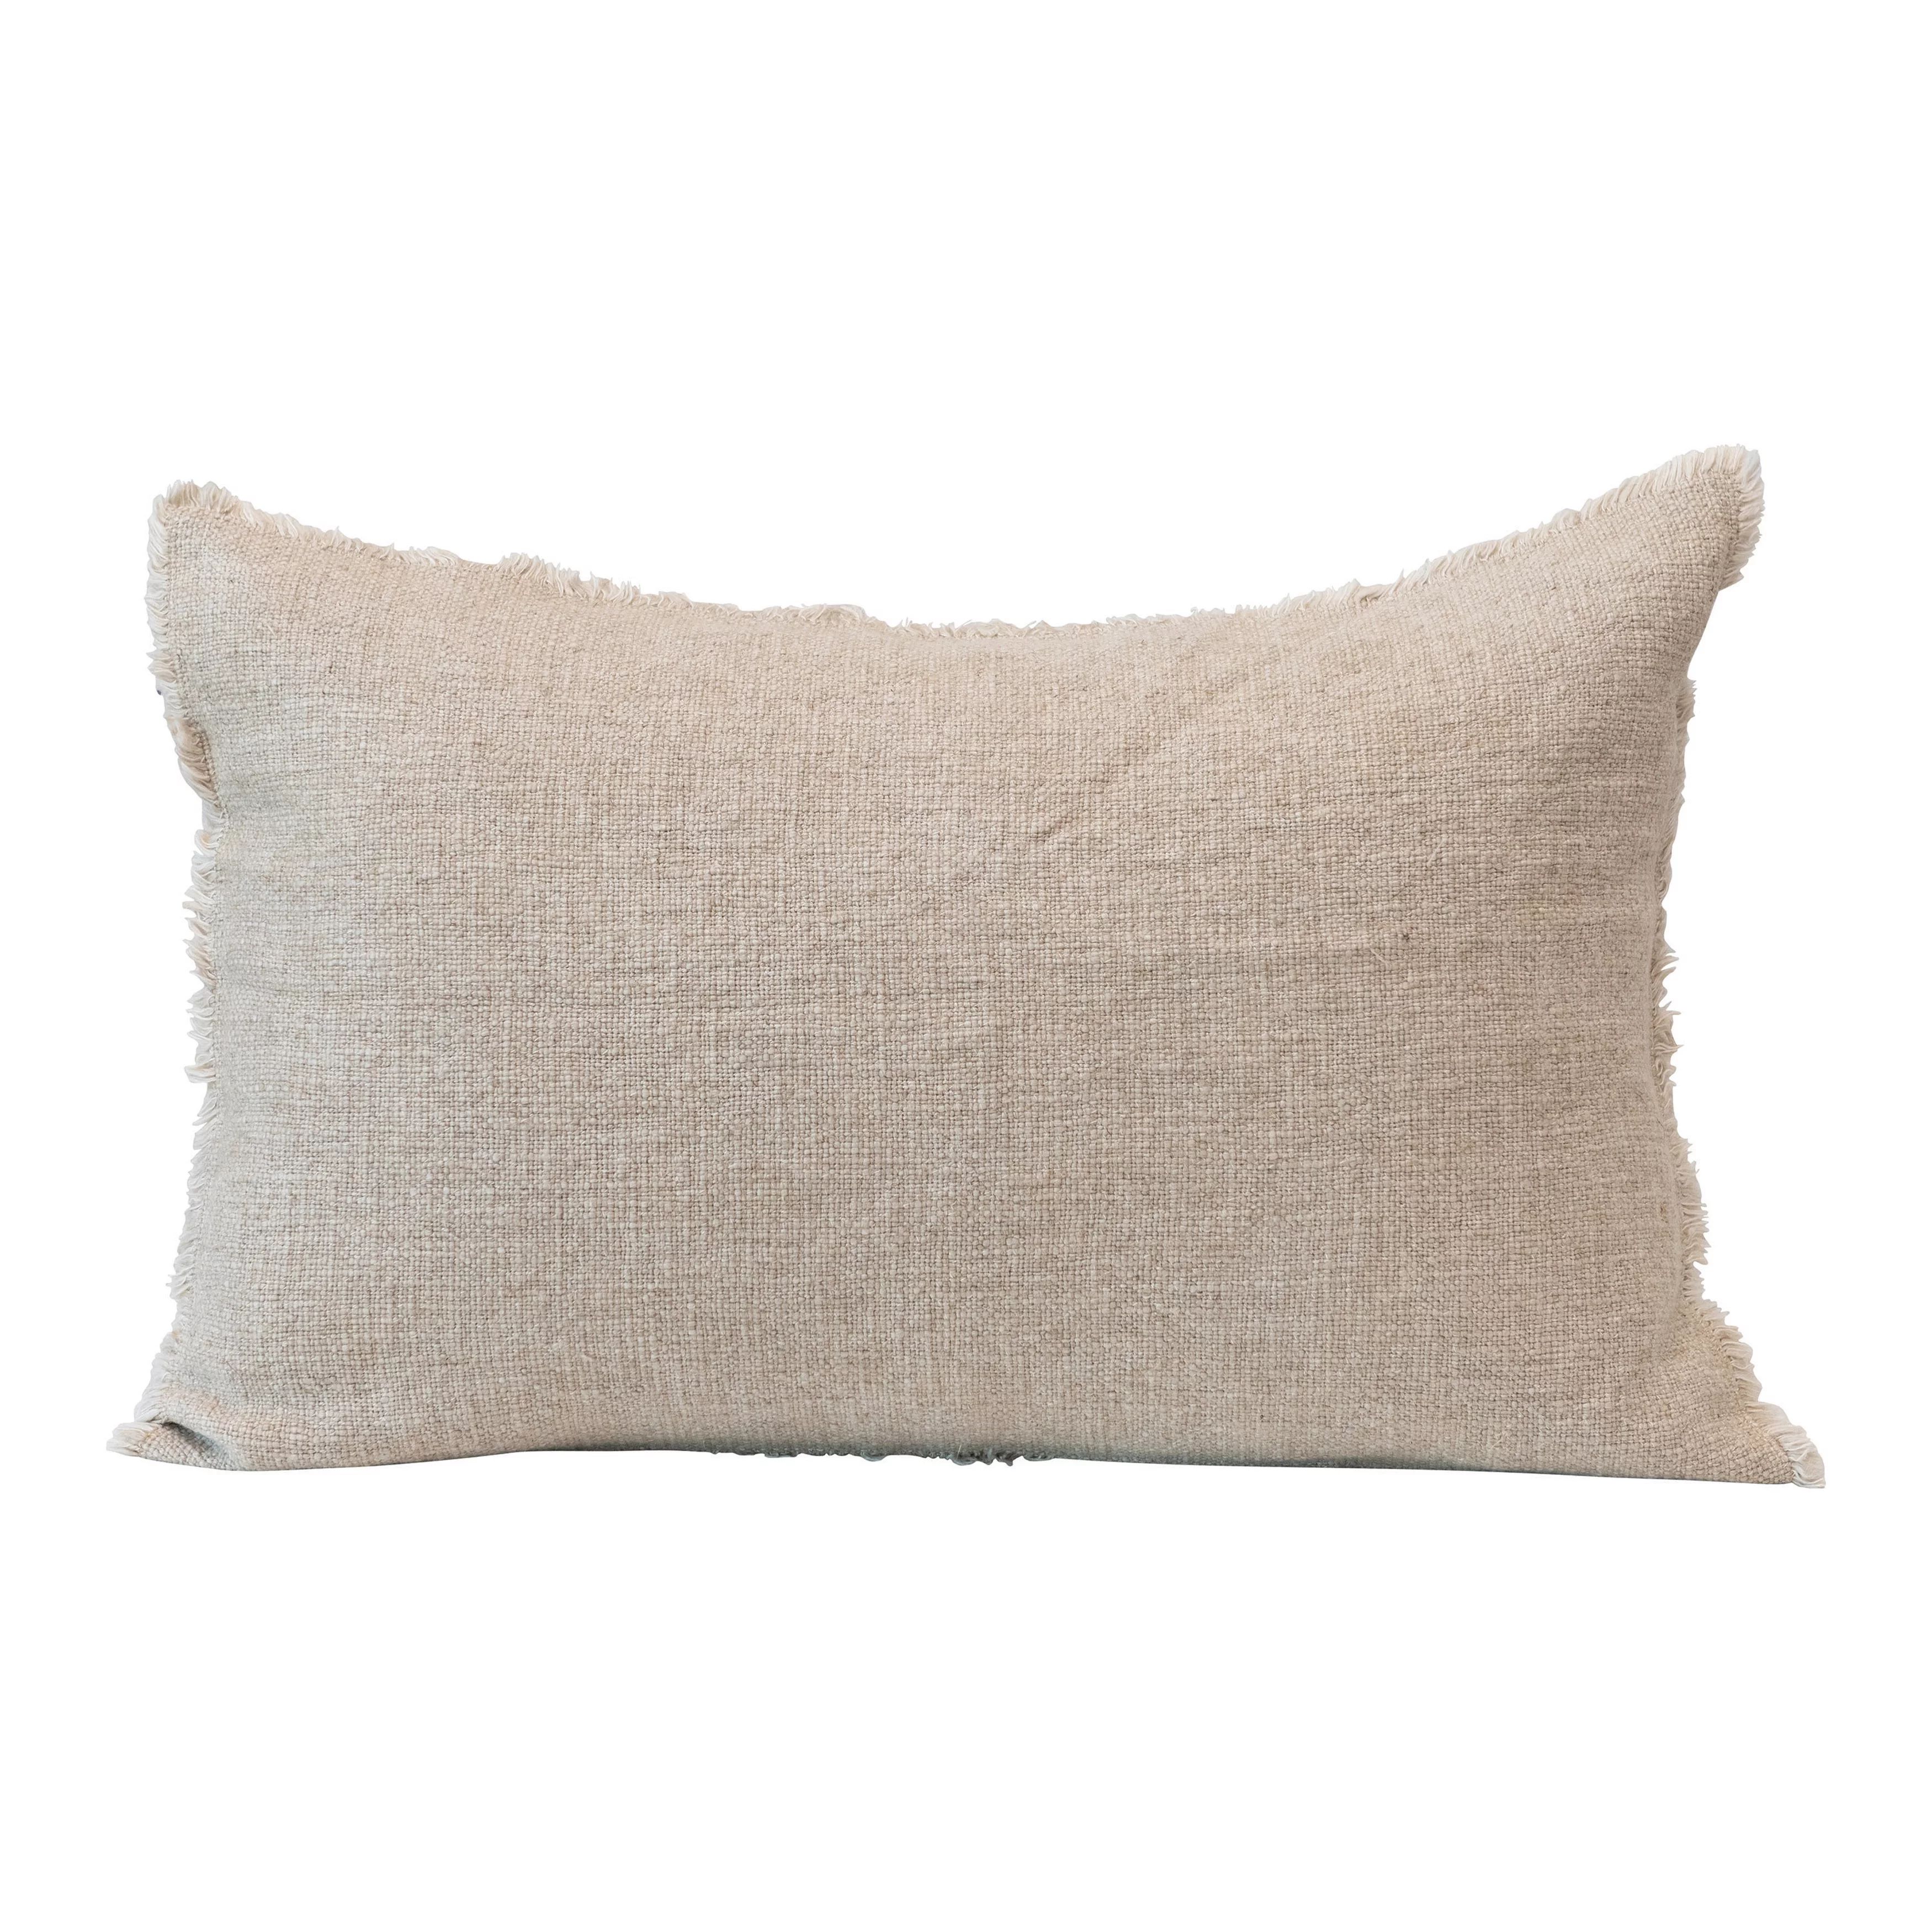 Creative Co-Op Linen Blend Lumbar Pillow with Frayed Edges, Natural | Walmart (US)